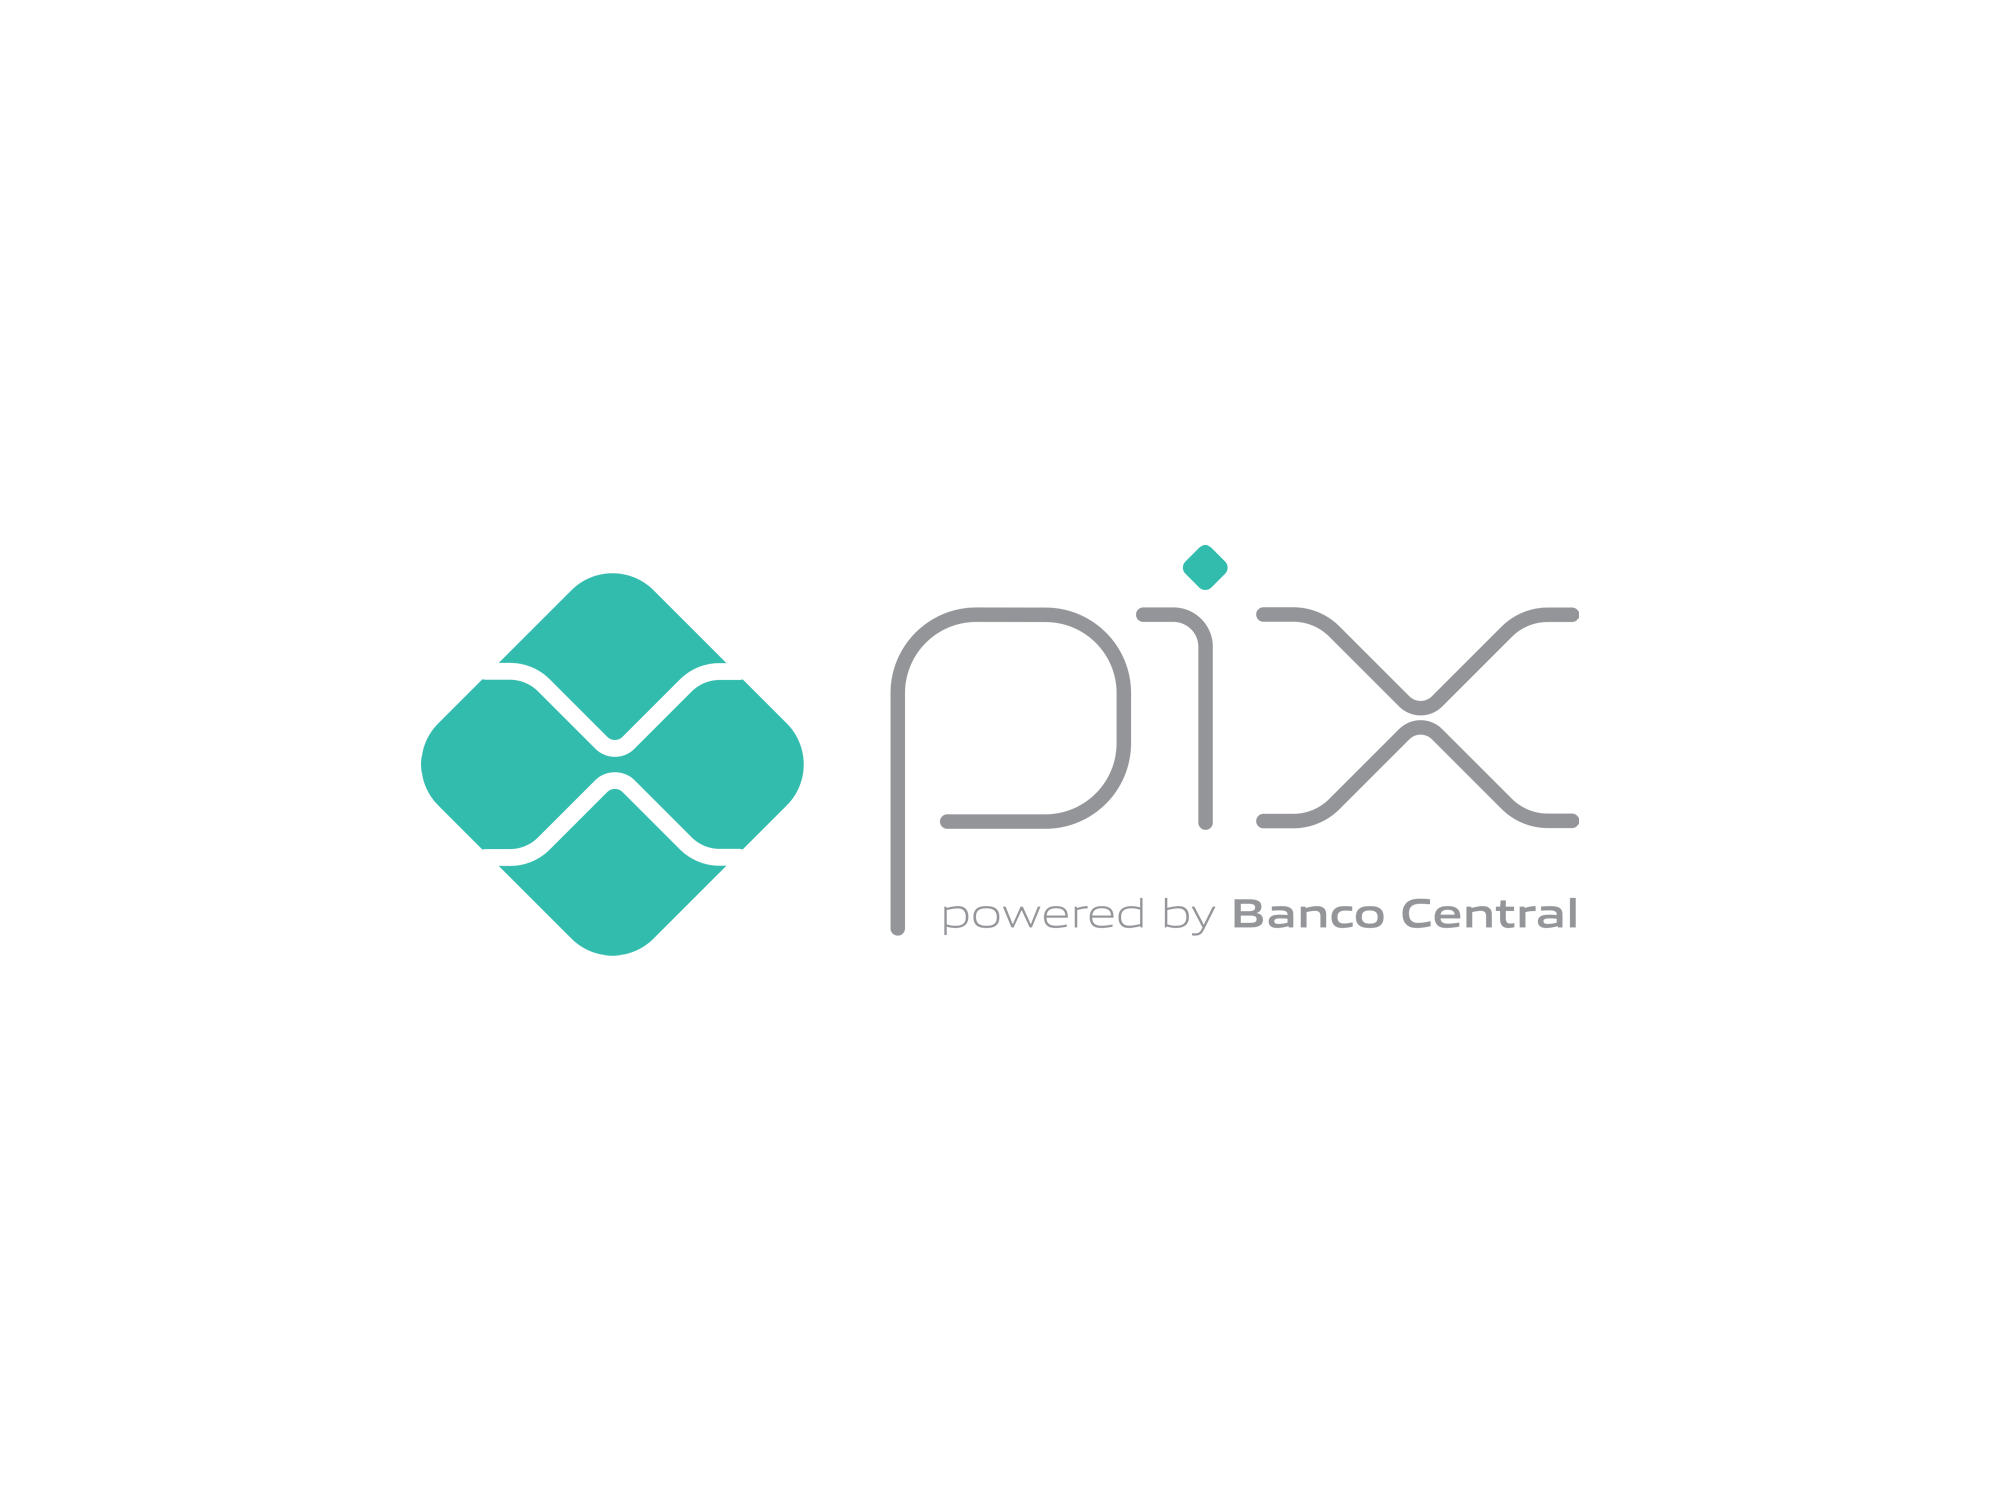 Pix logo